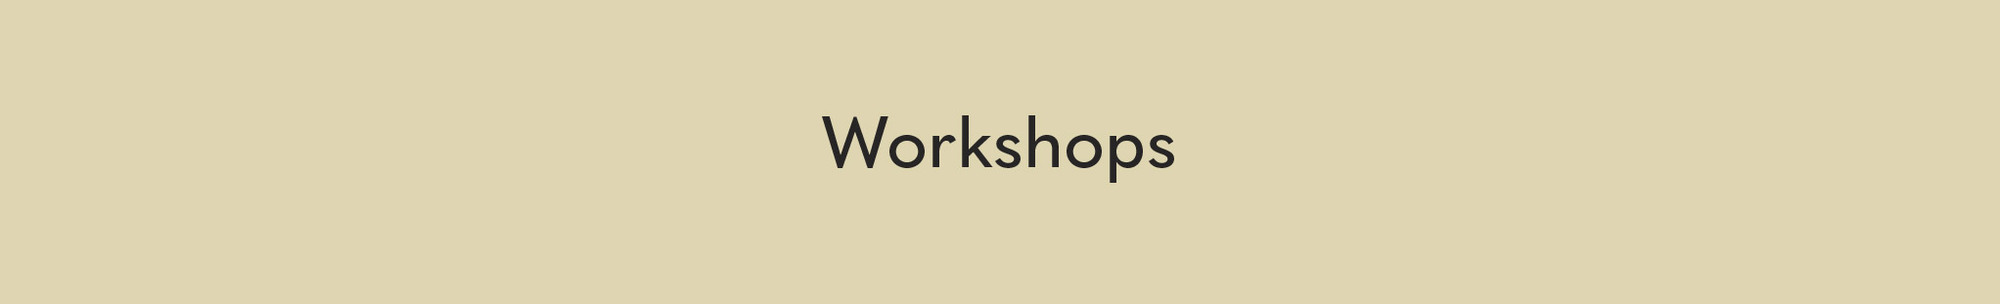 Workshops Header